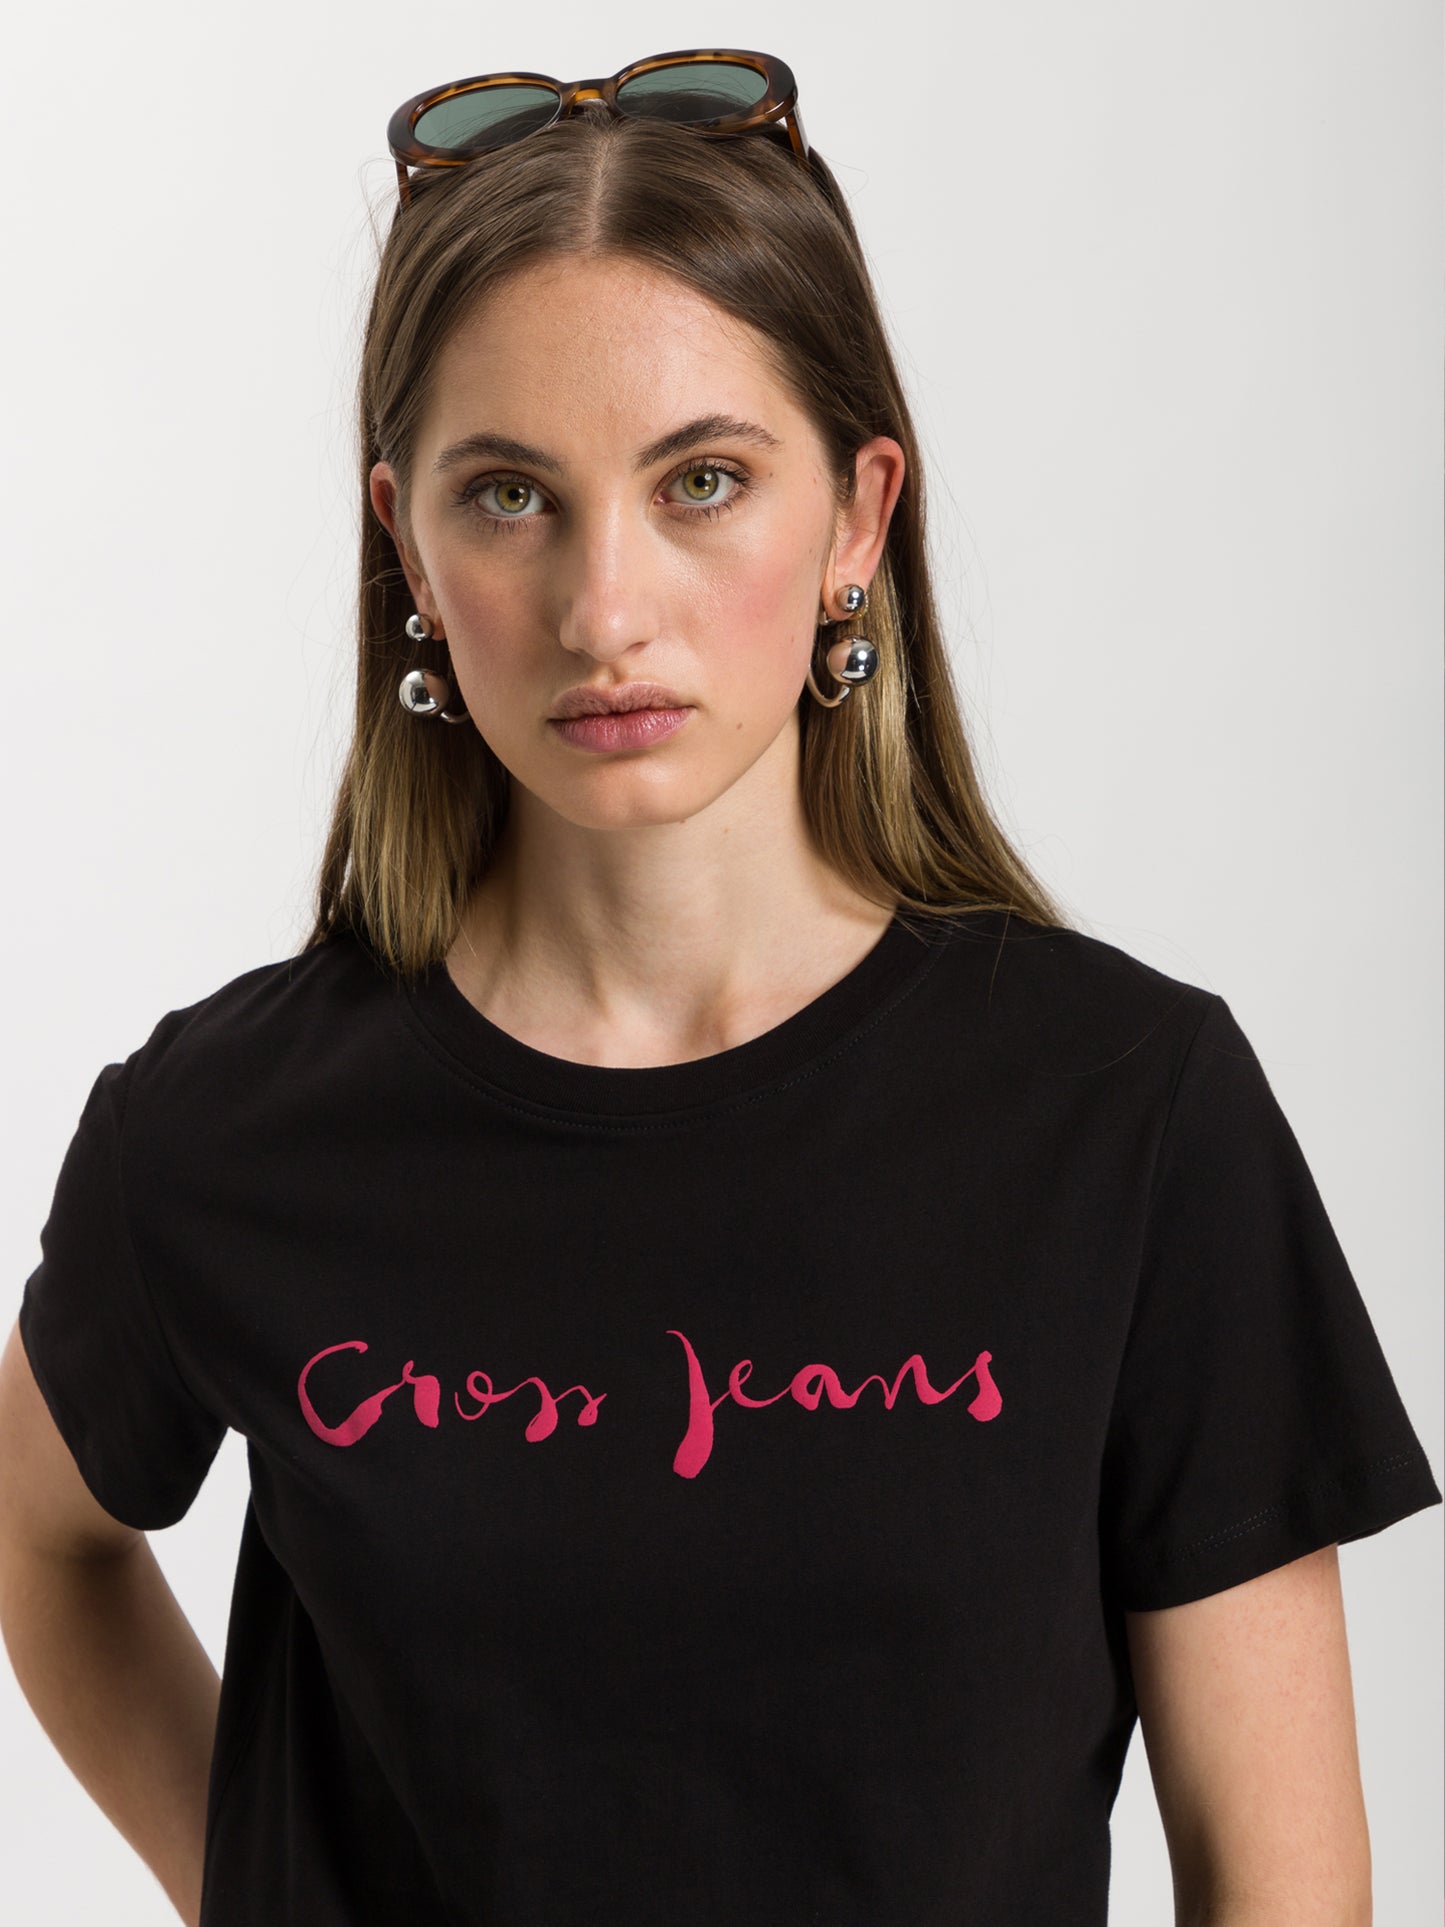 Damen Regular T-Shirt mit Cross Jeans Logo Print schwarz